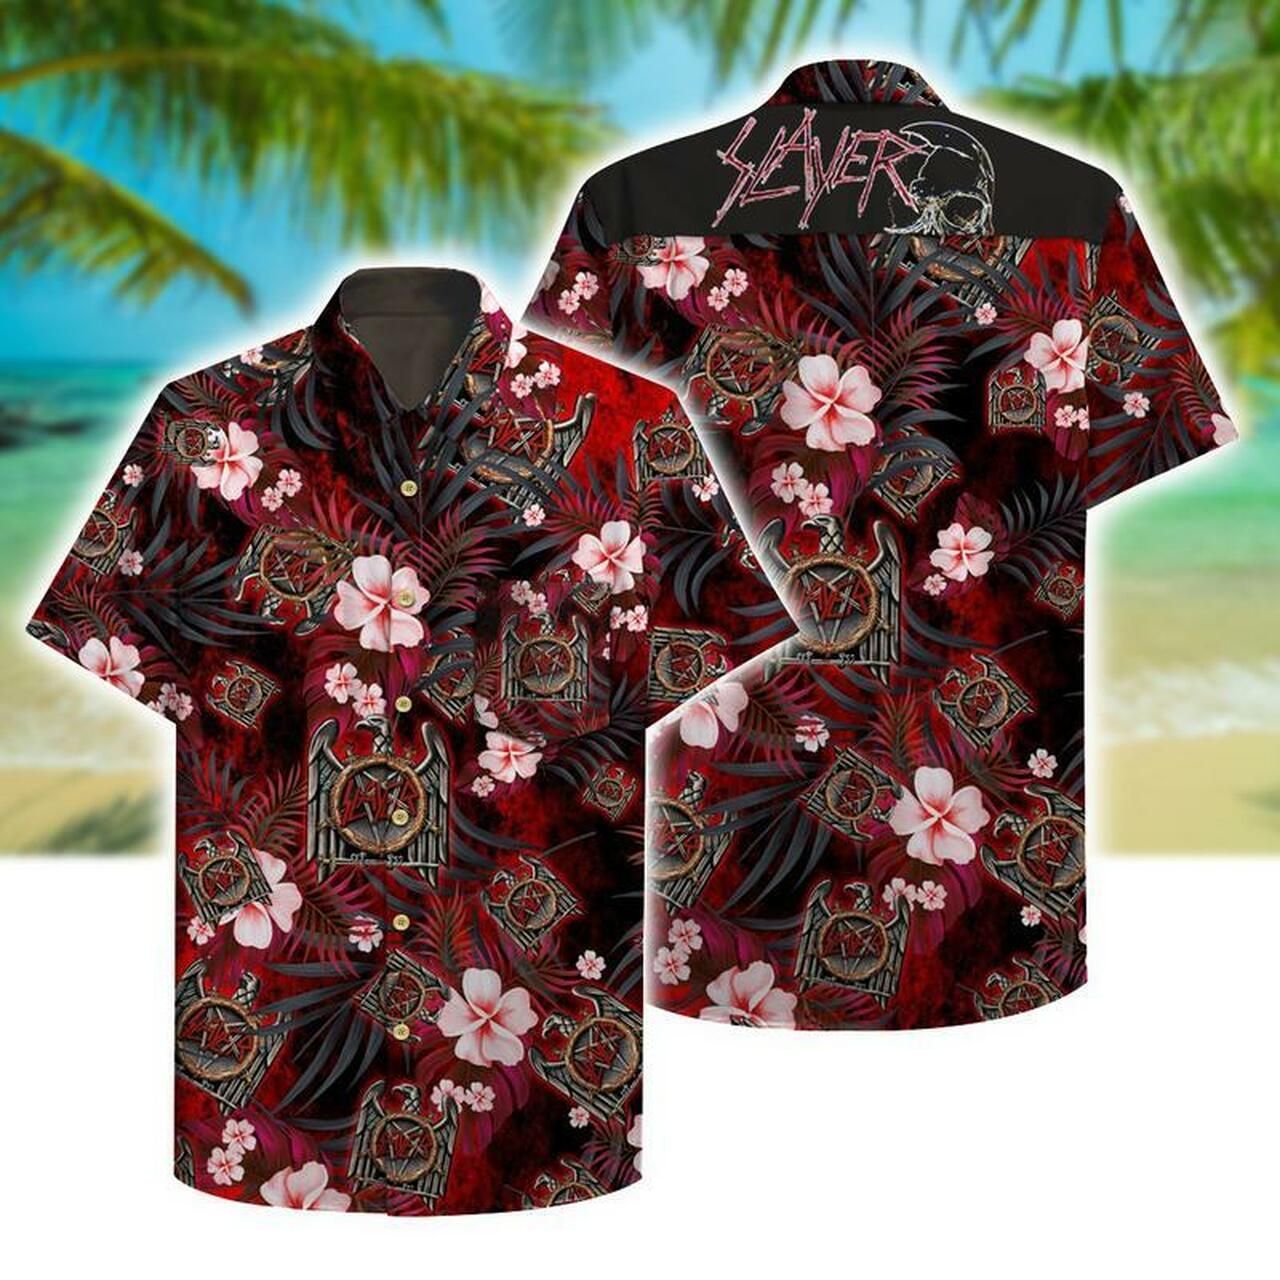 Slayer Hawaiian Graphic Print Short Sleeve Hawaiian Casual Shirt  size S - 5XL